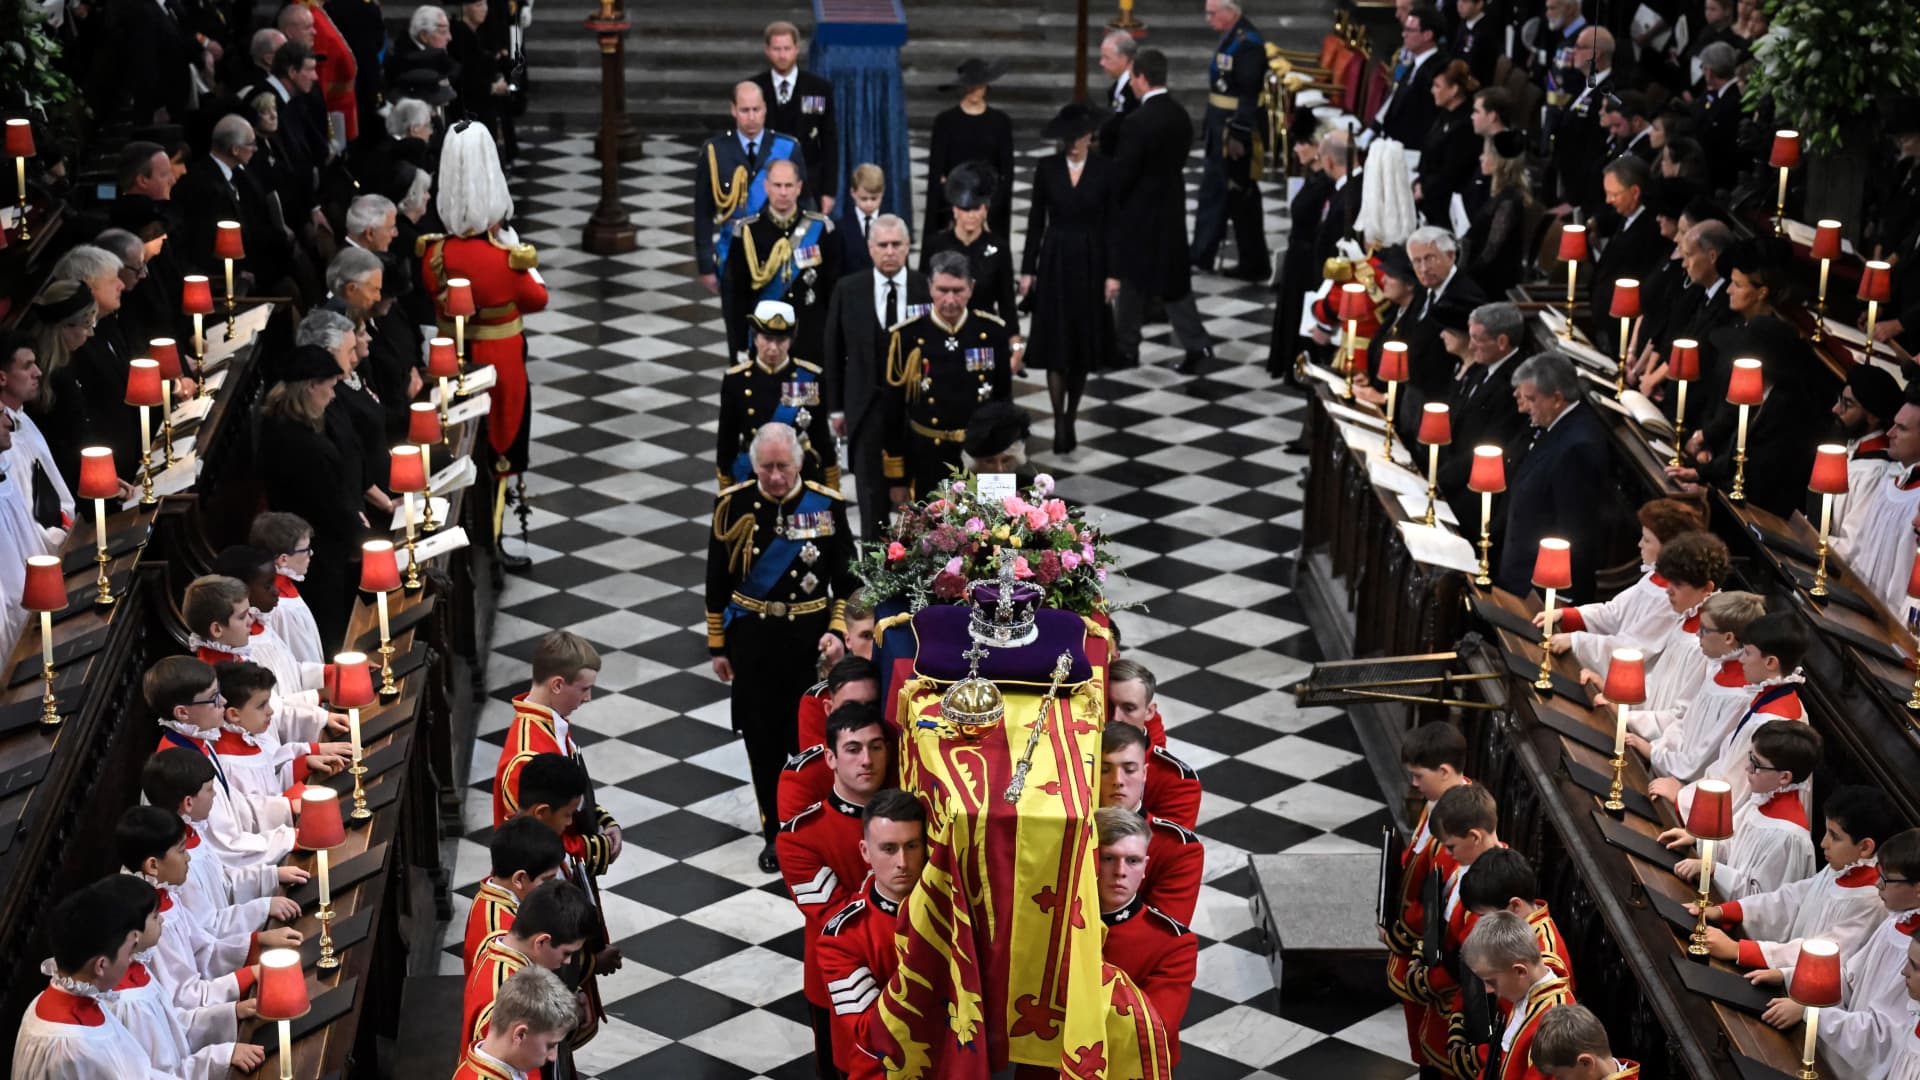 Queen Elizabeth II’s funeral cost over $200 million, UK government reveals